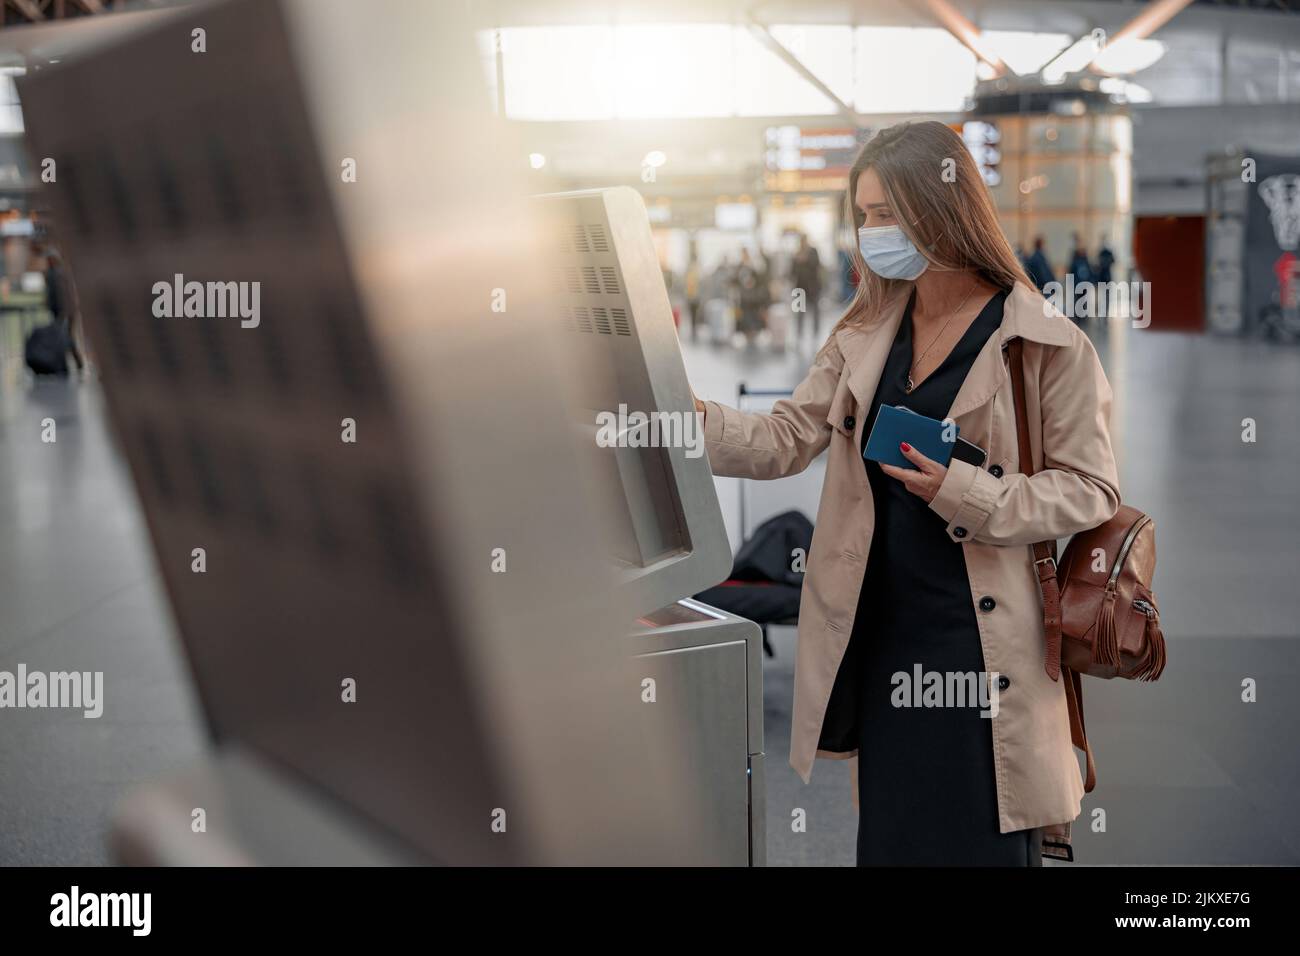 Junge Dame berührt den interaktiven Bildschirm, um online einzuchecken Stockfoto